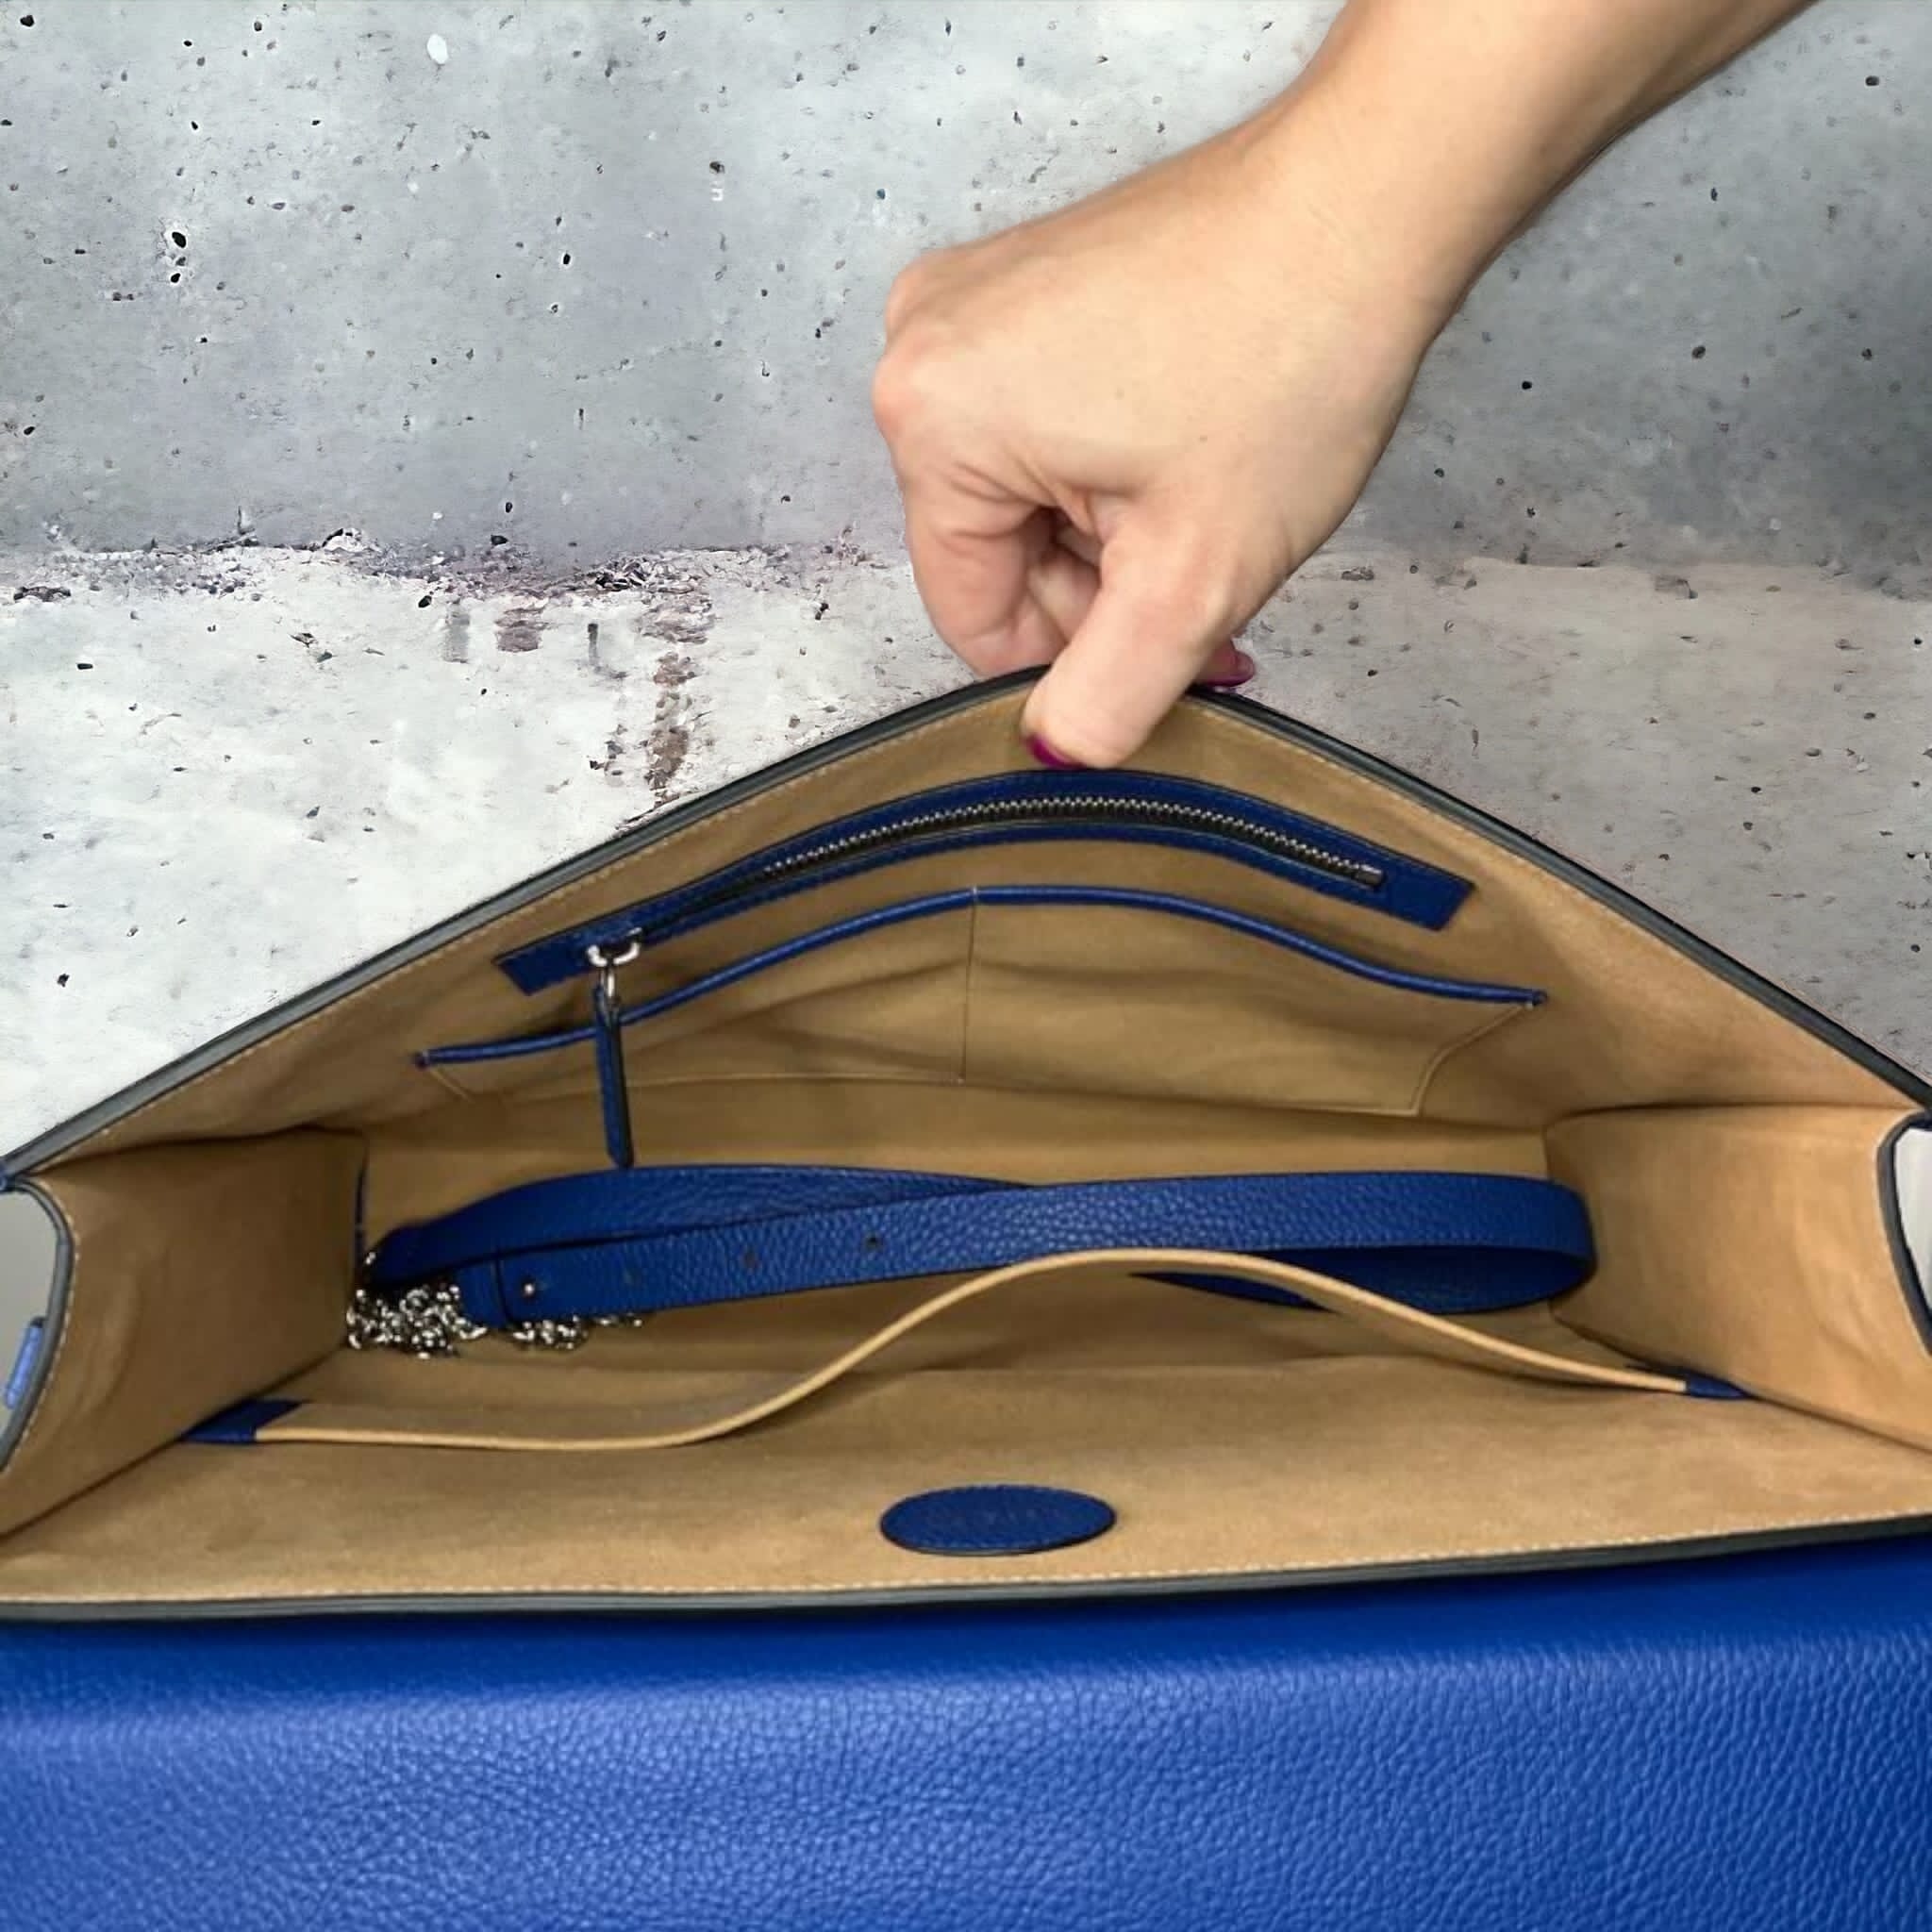 Camila Royal Blue laptop táska (limitált), kék - THEO Budapest Webshop -  Prémium minőségű, egyedi tervezésű bőrtáskák és kiegészítők